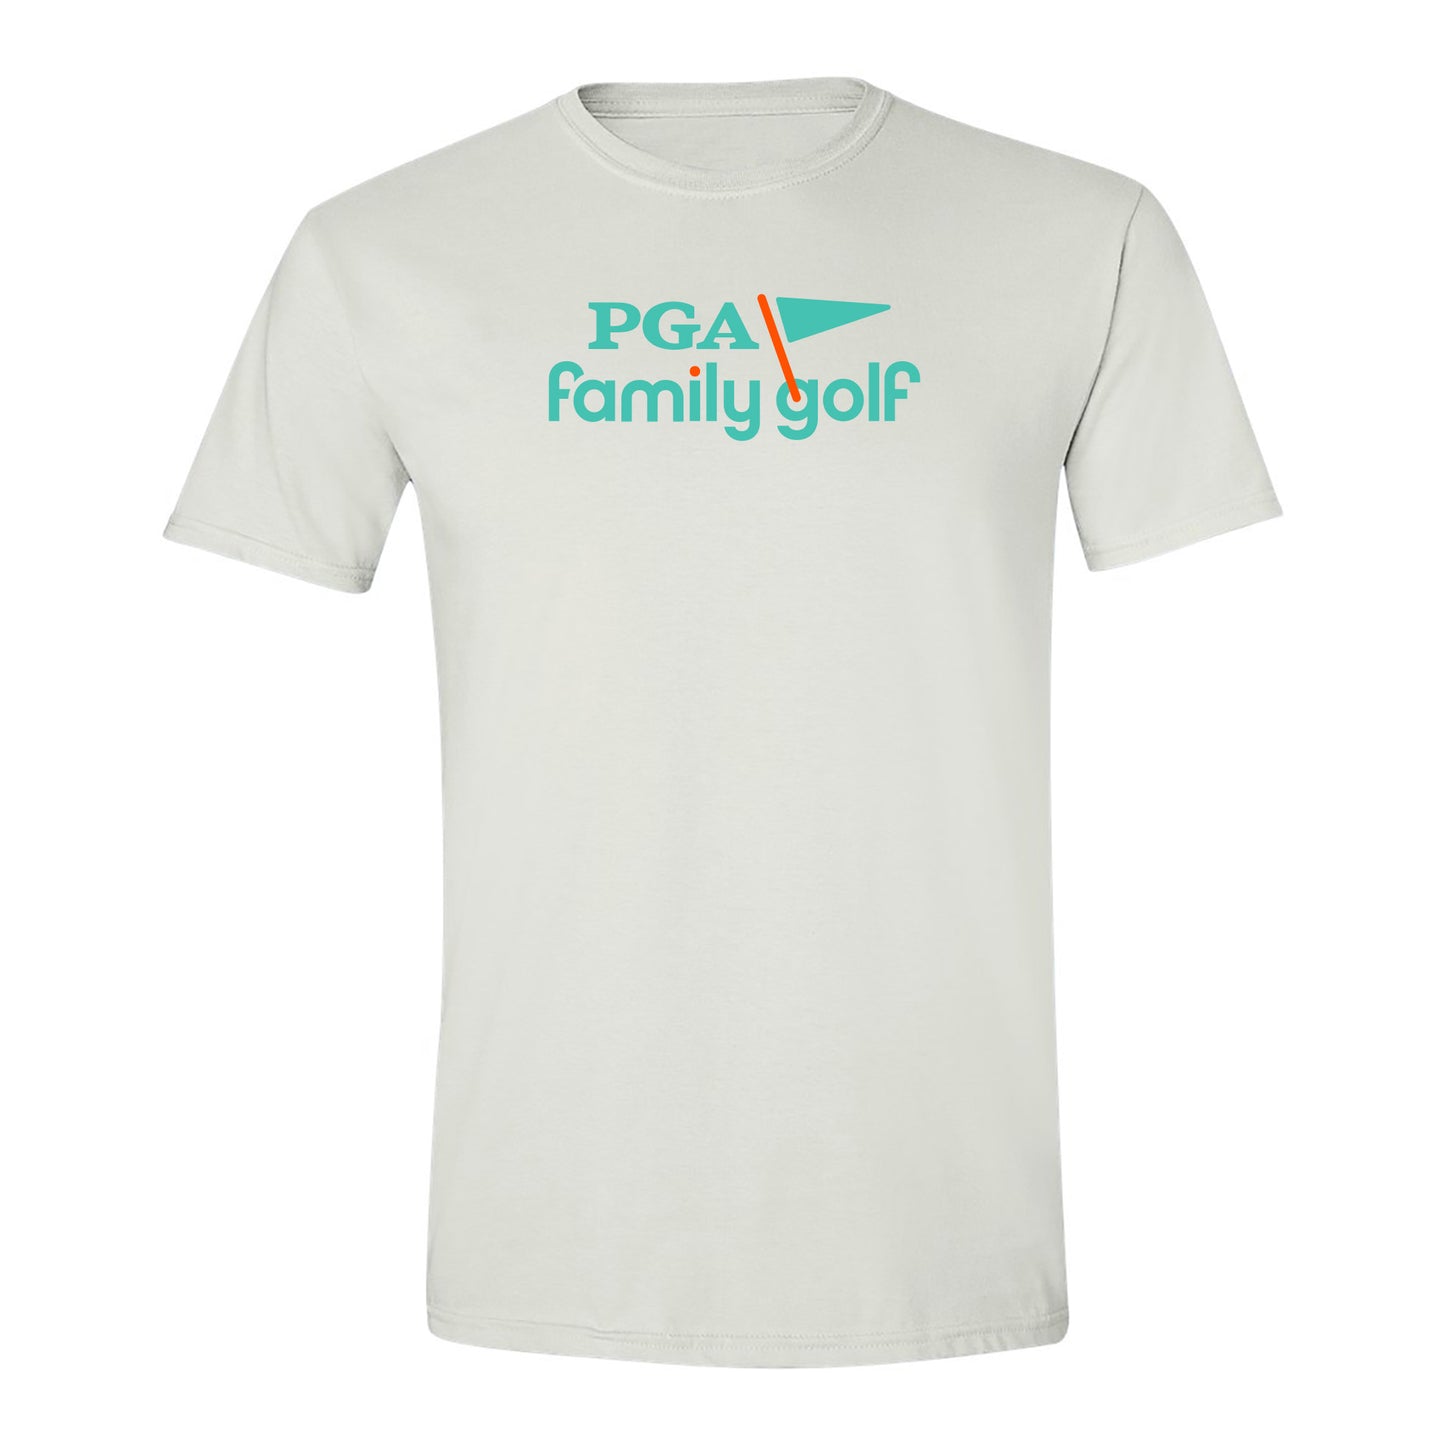 PGA Family Golf Adult T-Shirt - White